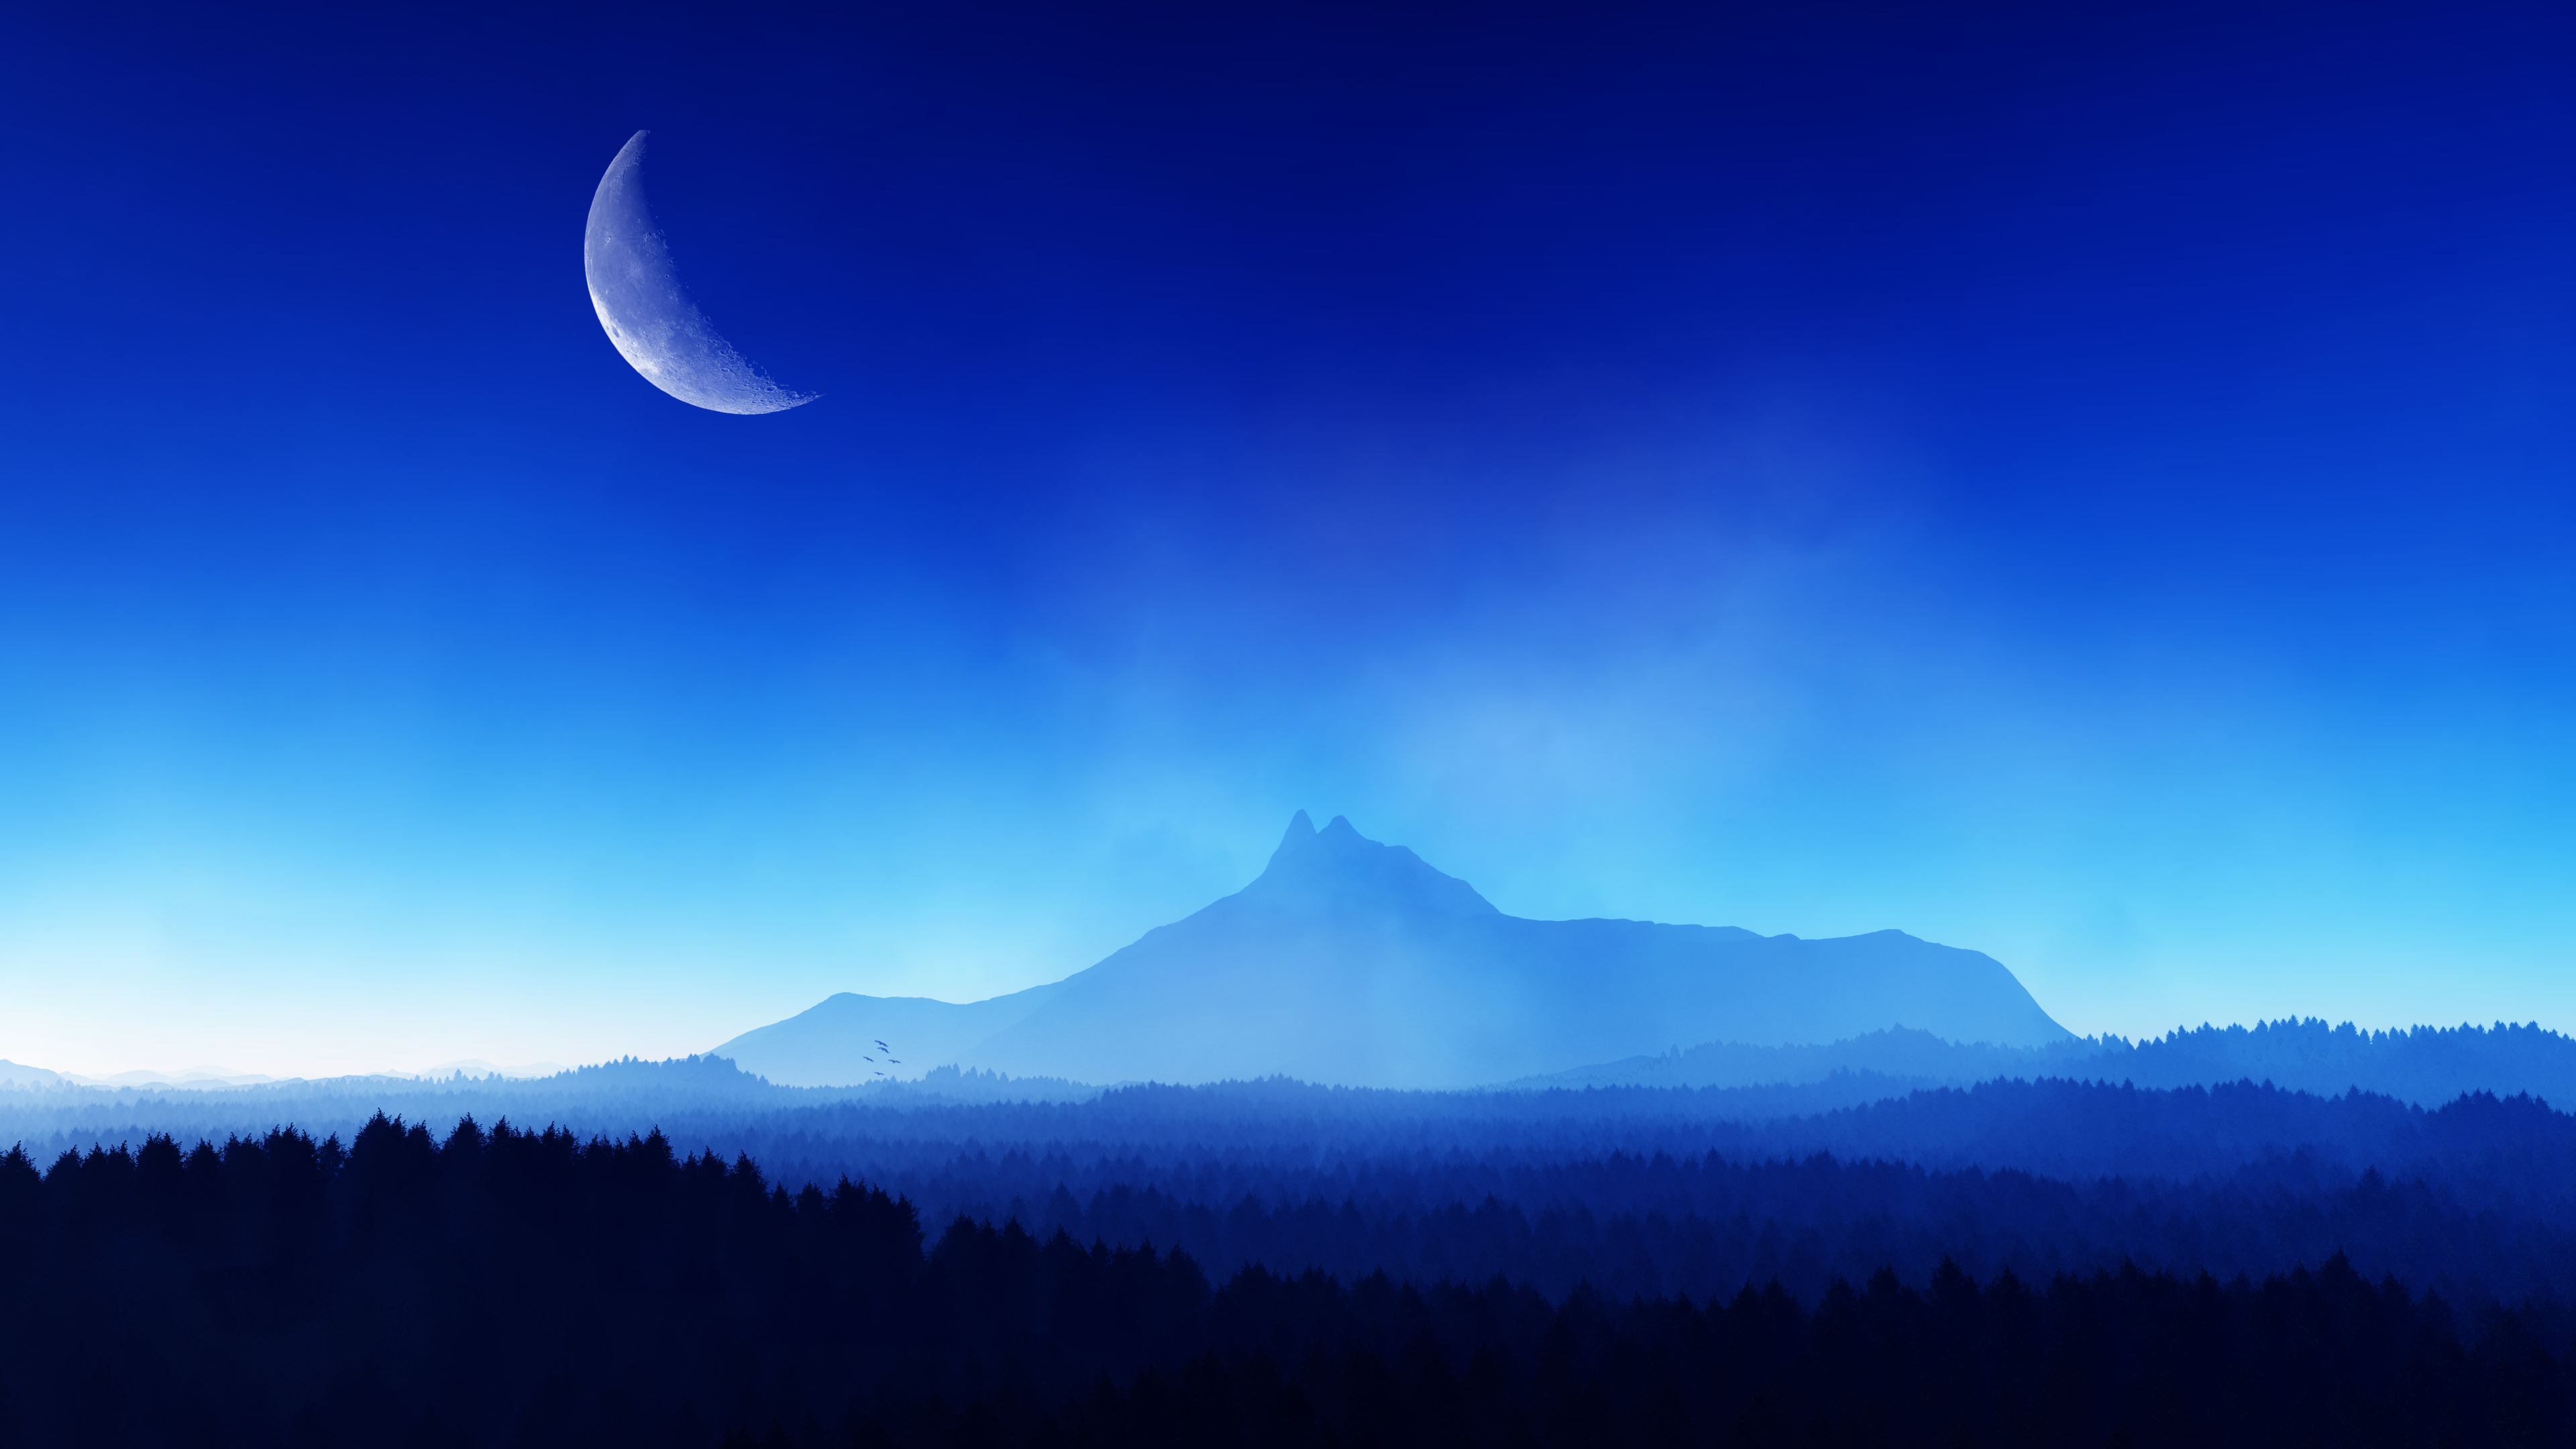 Digital Digital Art Artwork Illustration Render Landscape Sky Moon Mountains Nature Forest Blue Hypn 3840x2160